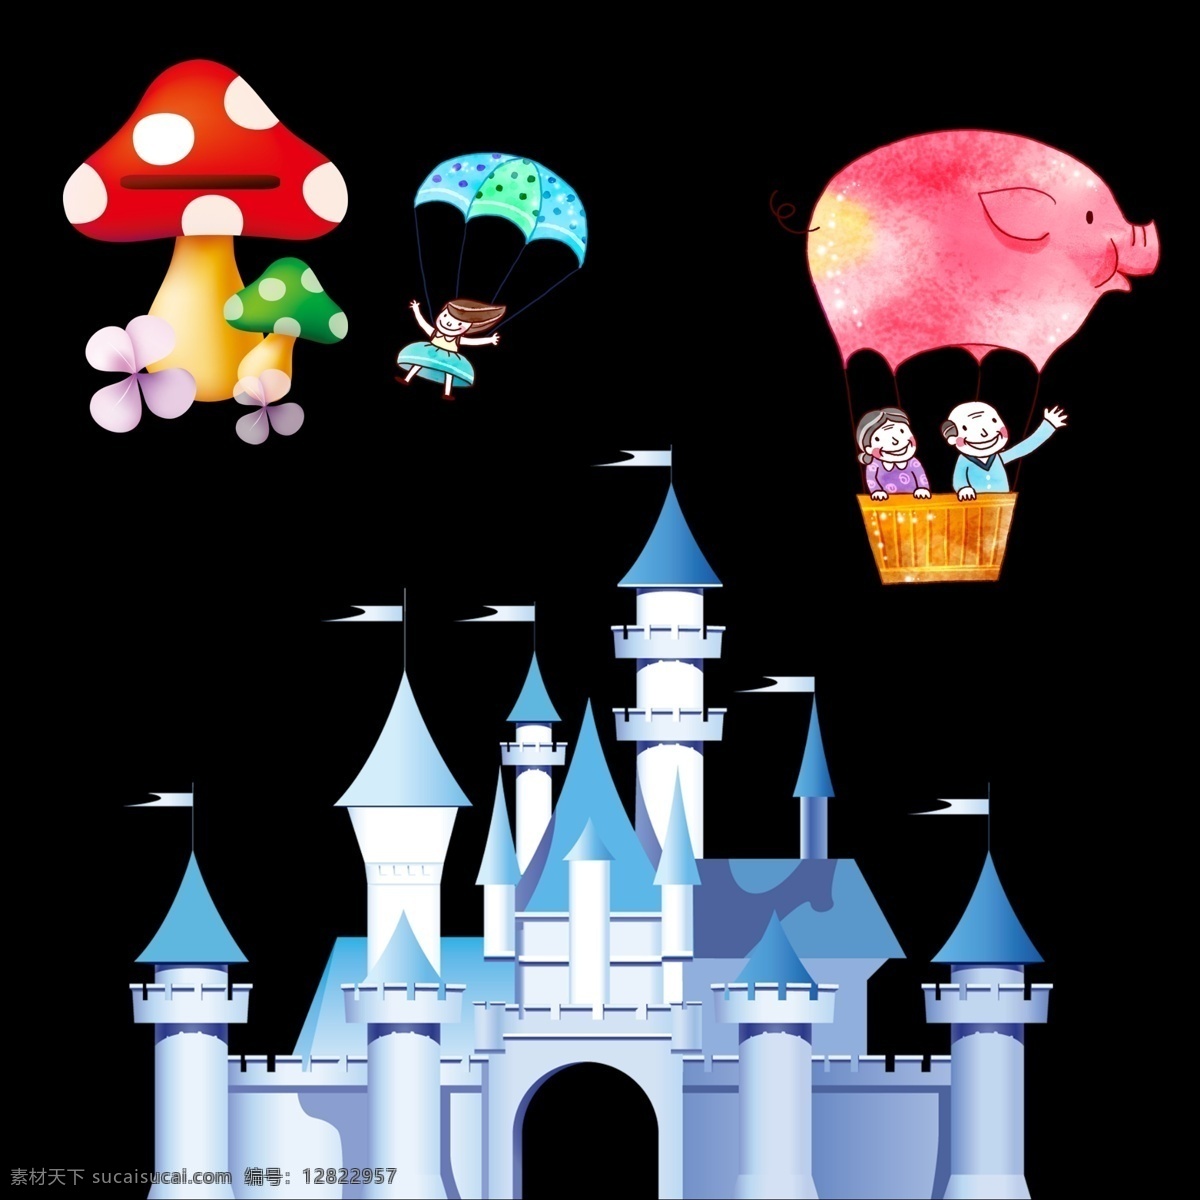 城堡 蘑菇 热气球 卡通素材 可爱 手绘素材 儿童素材 幼儿园素材 卡通 矢量 抽象设计 时尚 可爱卡通 卡通蘑菇 小蘑菇 卡通热气球 梦幻城堡 卡通城堡